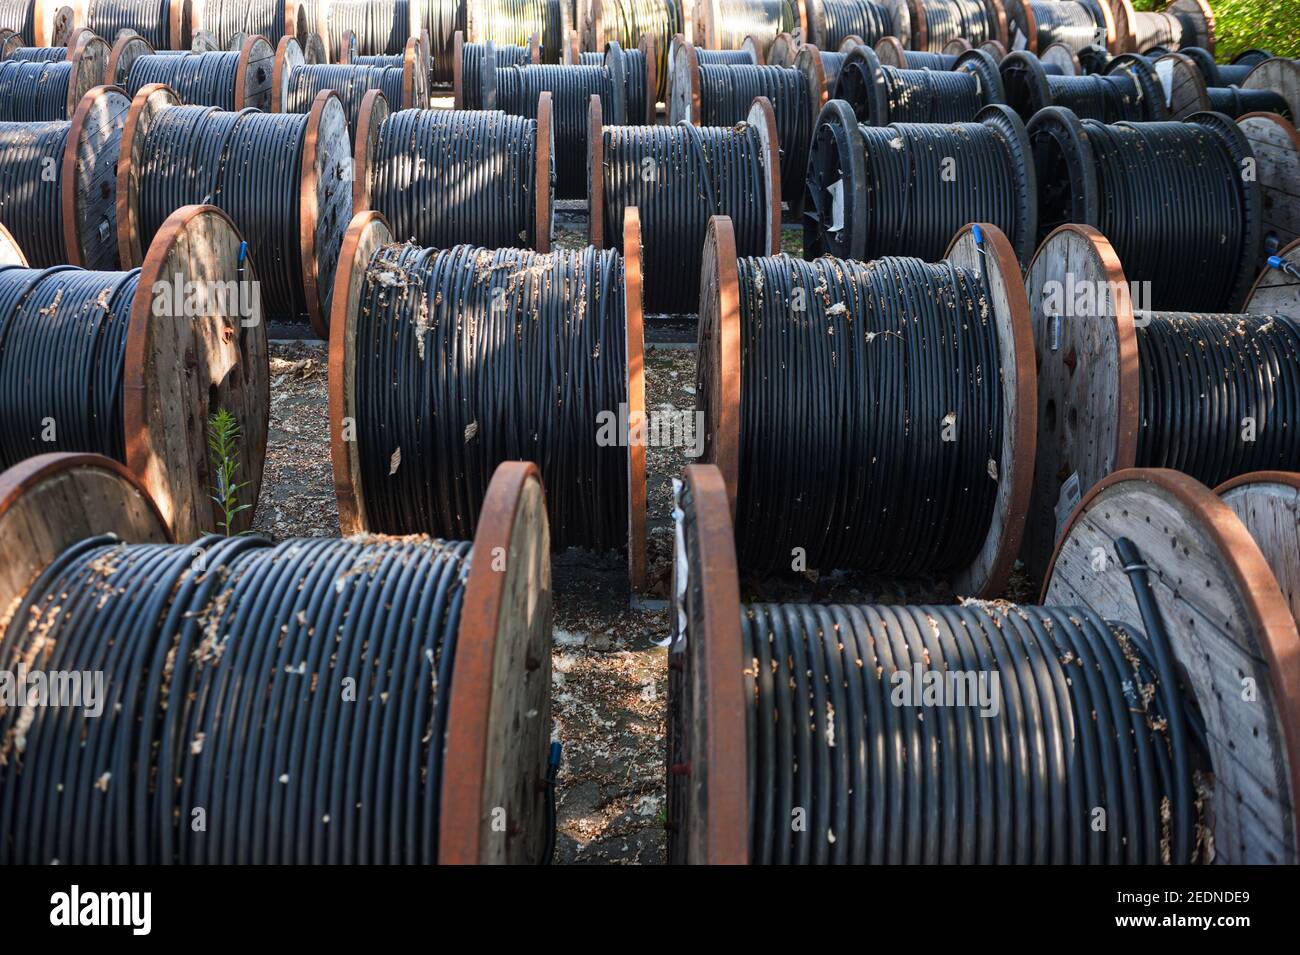 14.06.2017, Berlín, , Alemania - Europa - los cables subterráneos negros para la fuente de alimentación se ponen en bobinas de cable de madera. 0SL170614D020CAROEX.JPG [MO Foto de stock